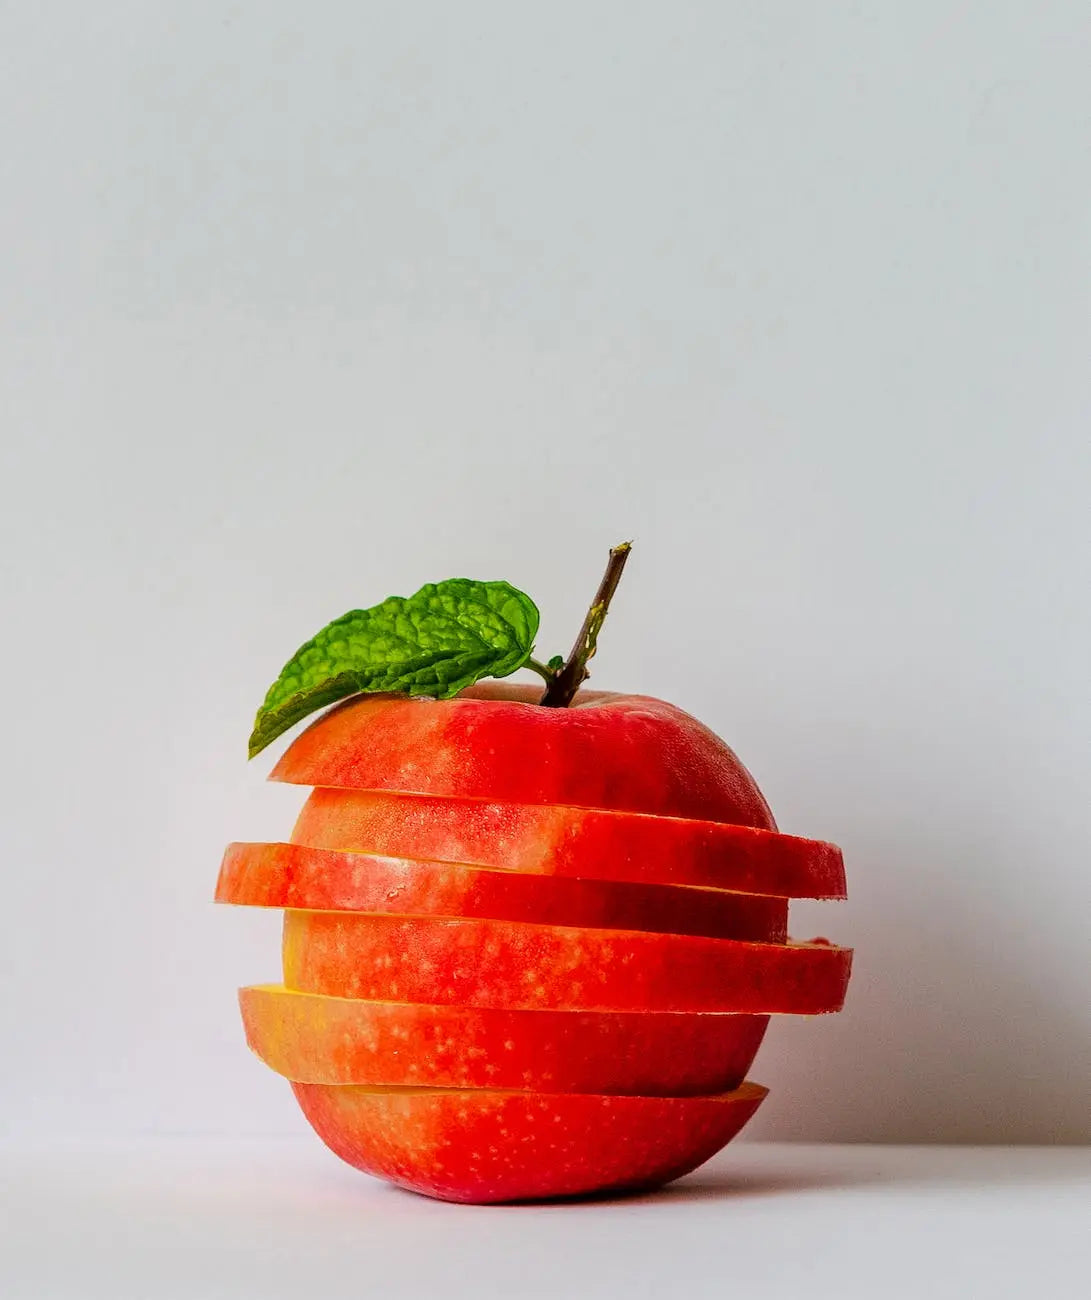 Unlock-the-Secret-Prolonging-the-Freshness-of-Apples-in-the-Fridge | Fridge.com